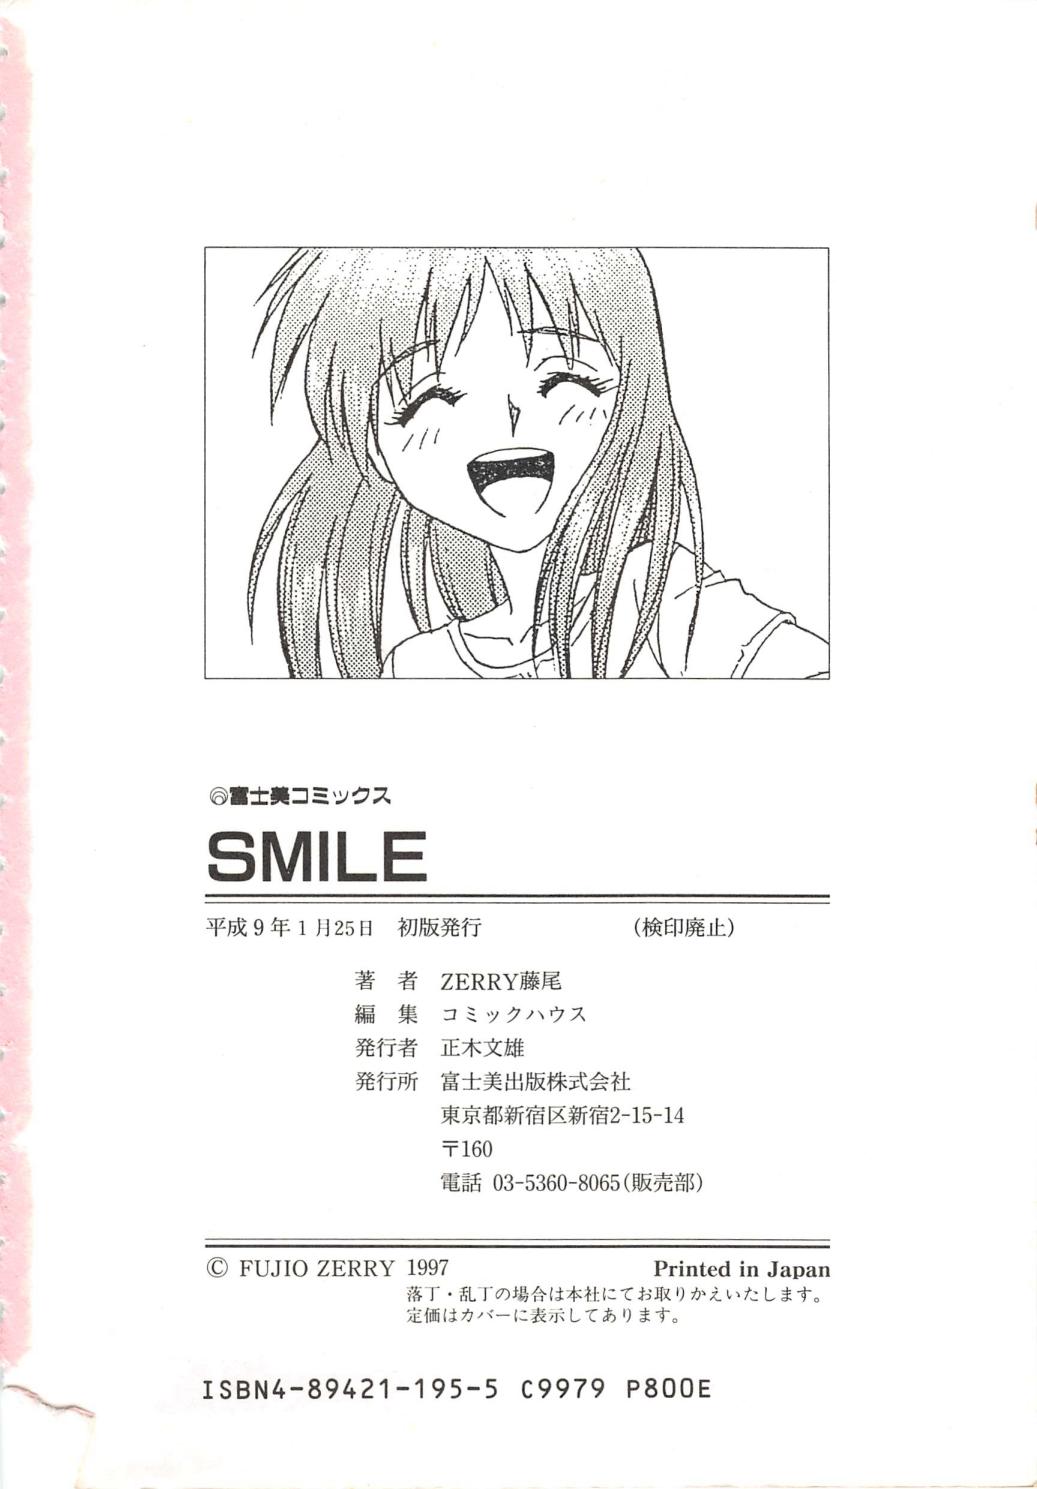 [ZERRY藤尾] SMILE